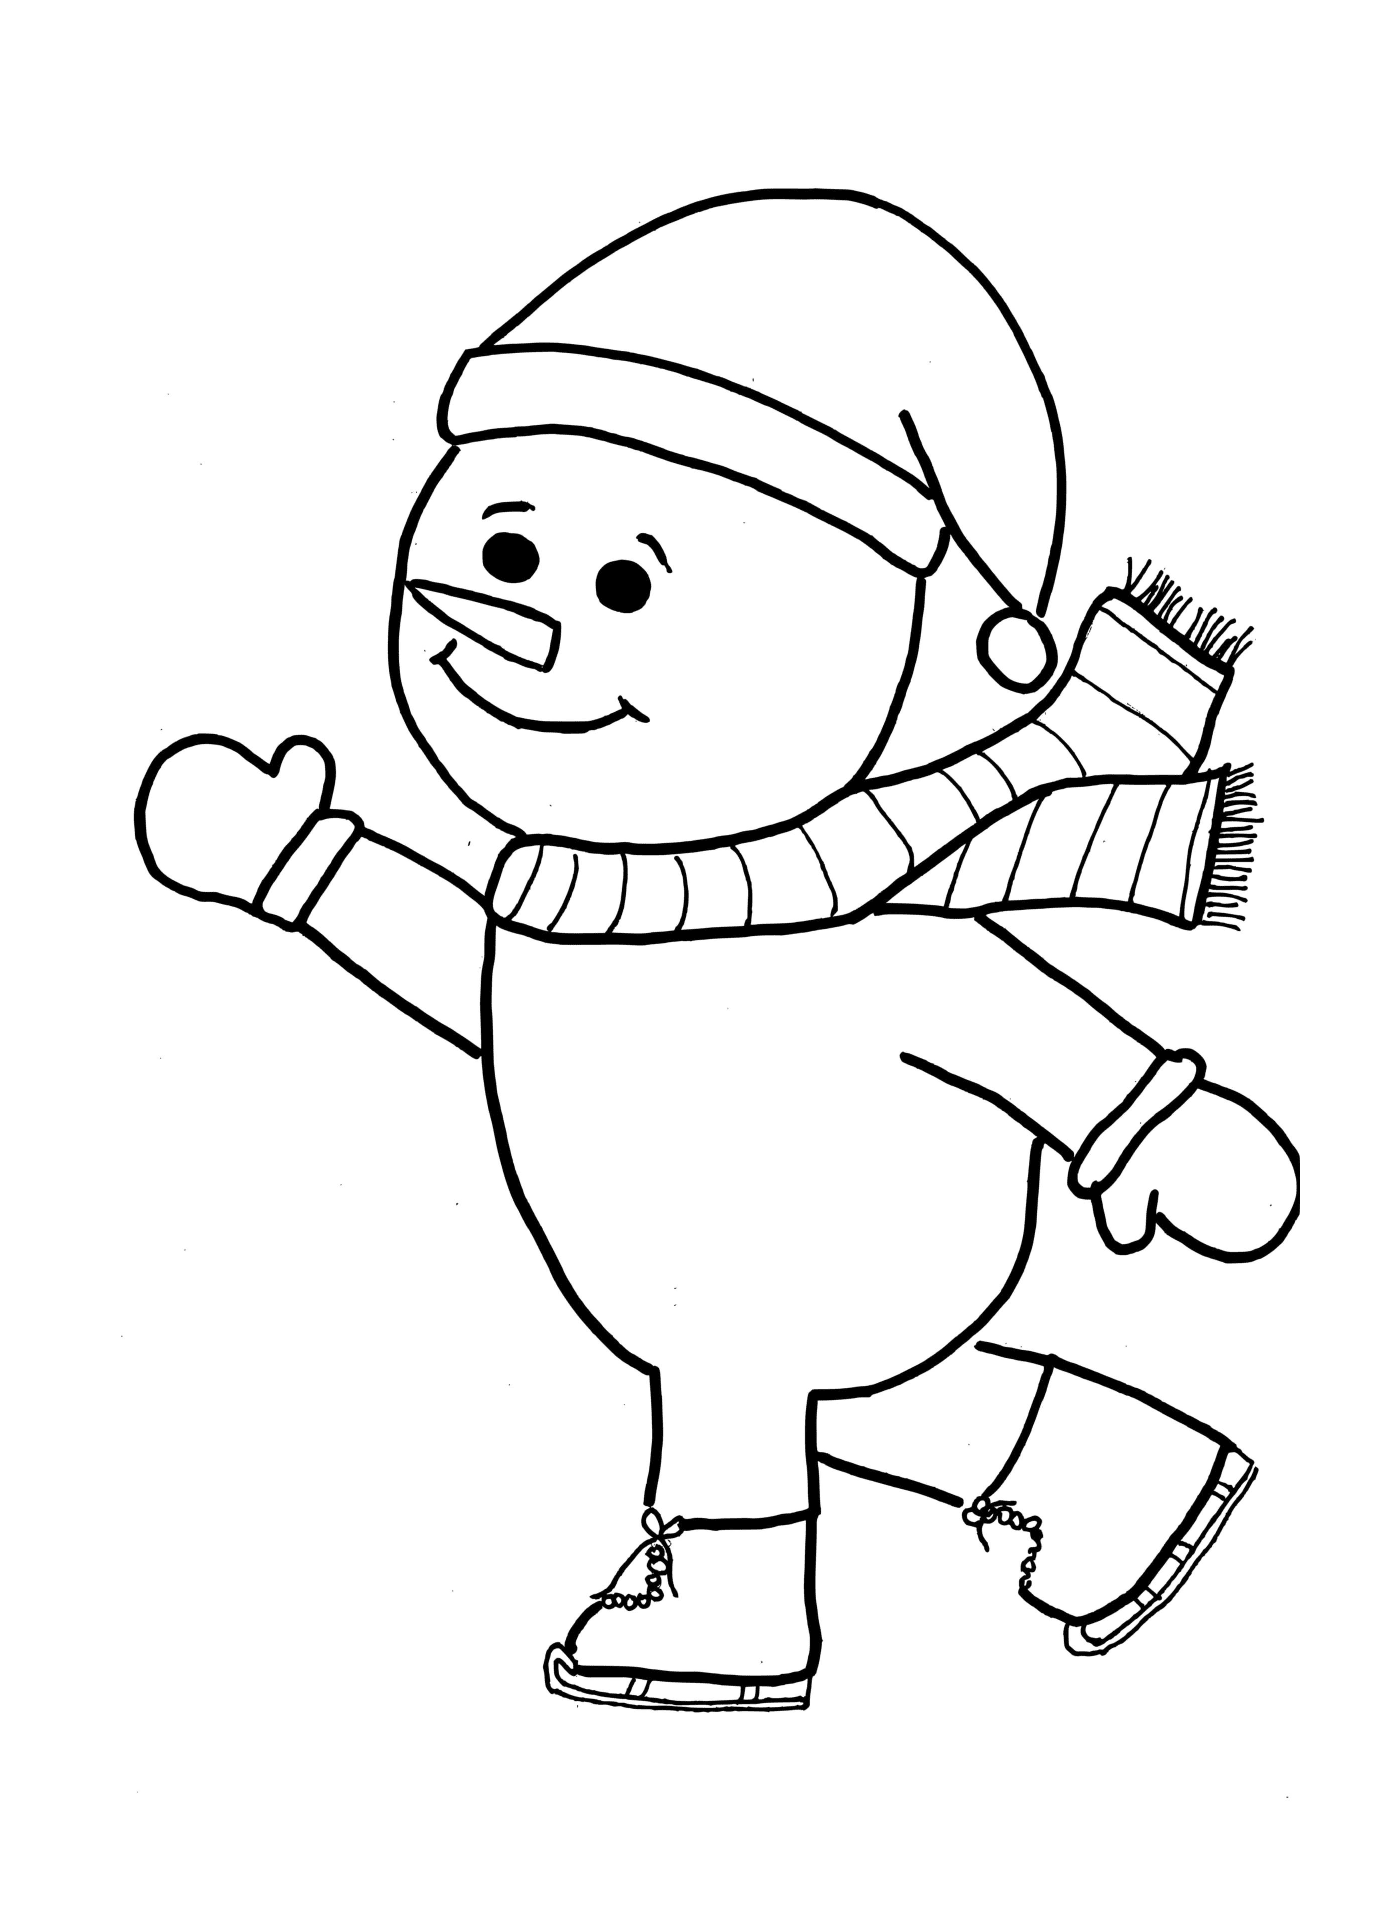   Un bonhomme de neige faisant du patinage le jour de Noël 